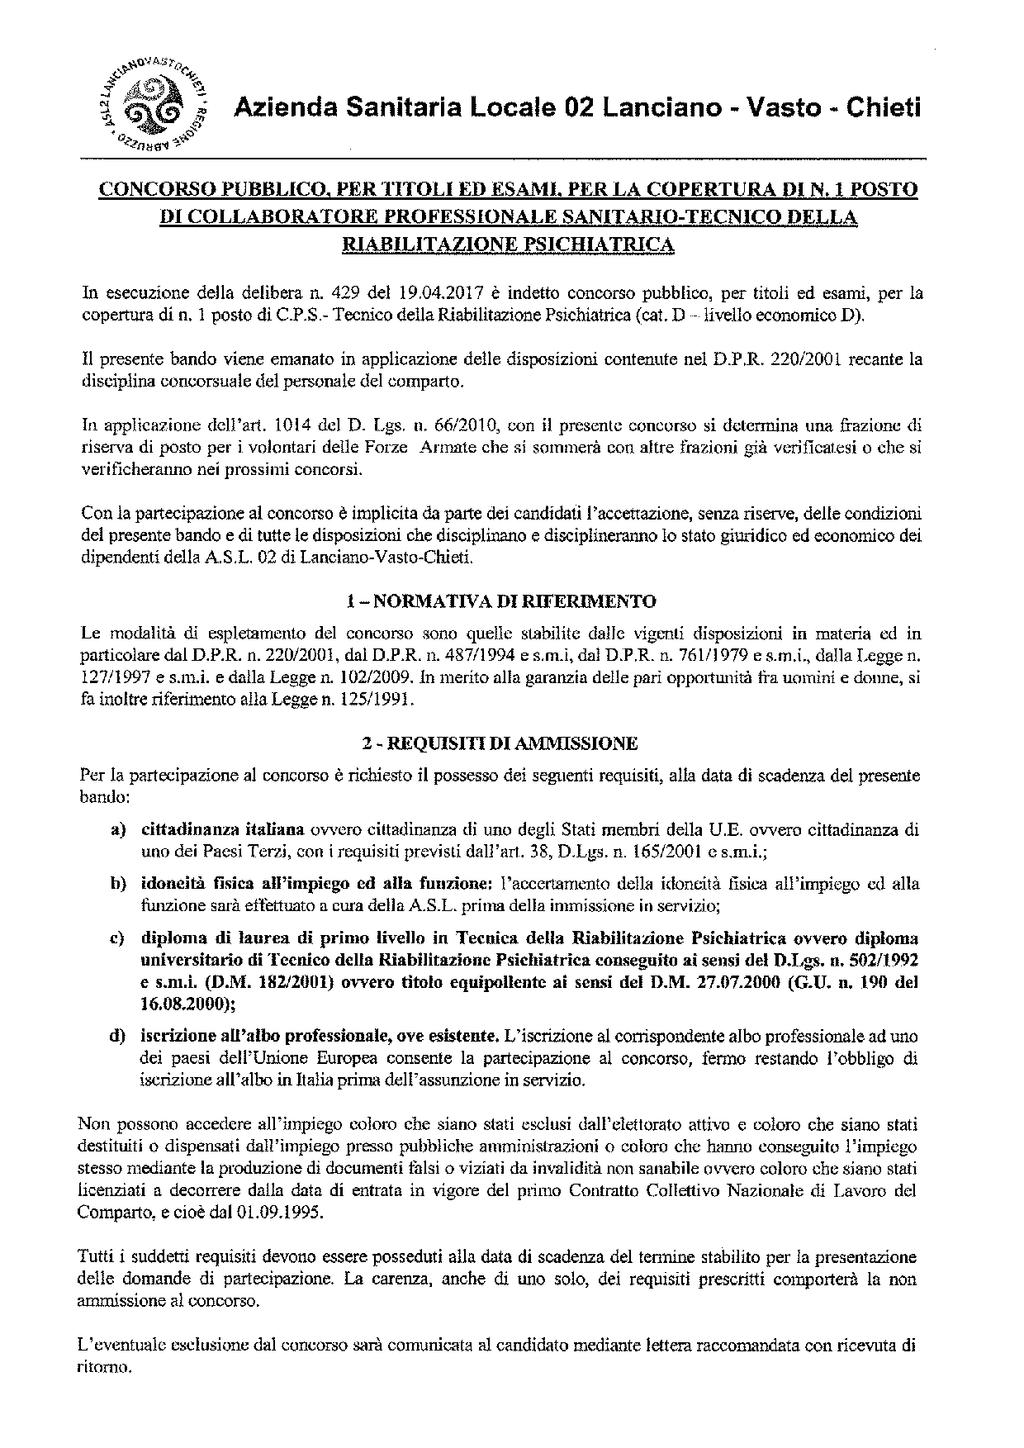 Anno XLVII N. 77 Speciale (07.07.2017) Bollettino Ufficiale della Regione Abruzzo Pag. 57 AZIENDA SANITARIA LOCALE N.